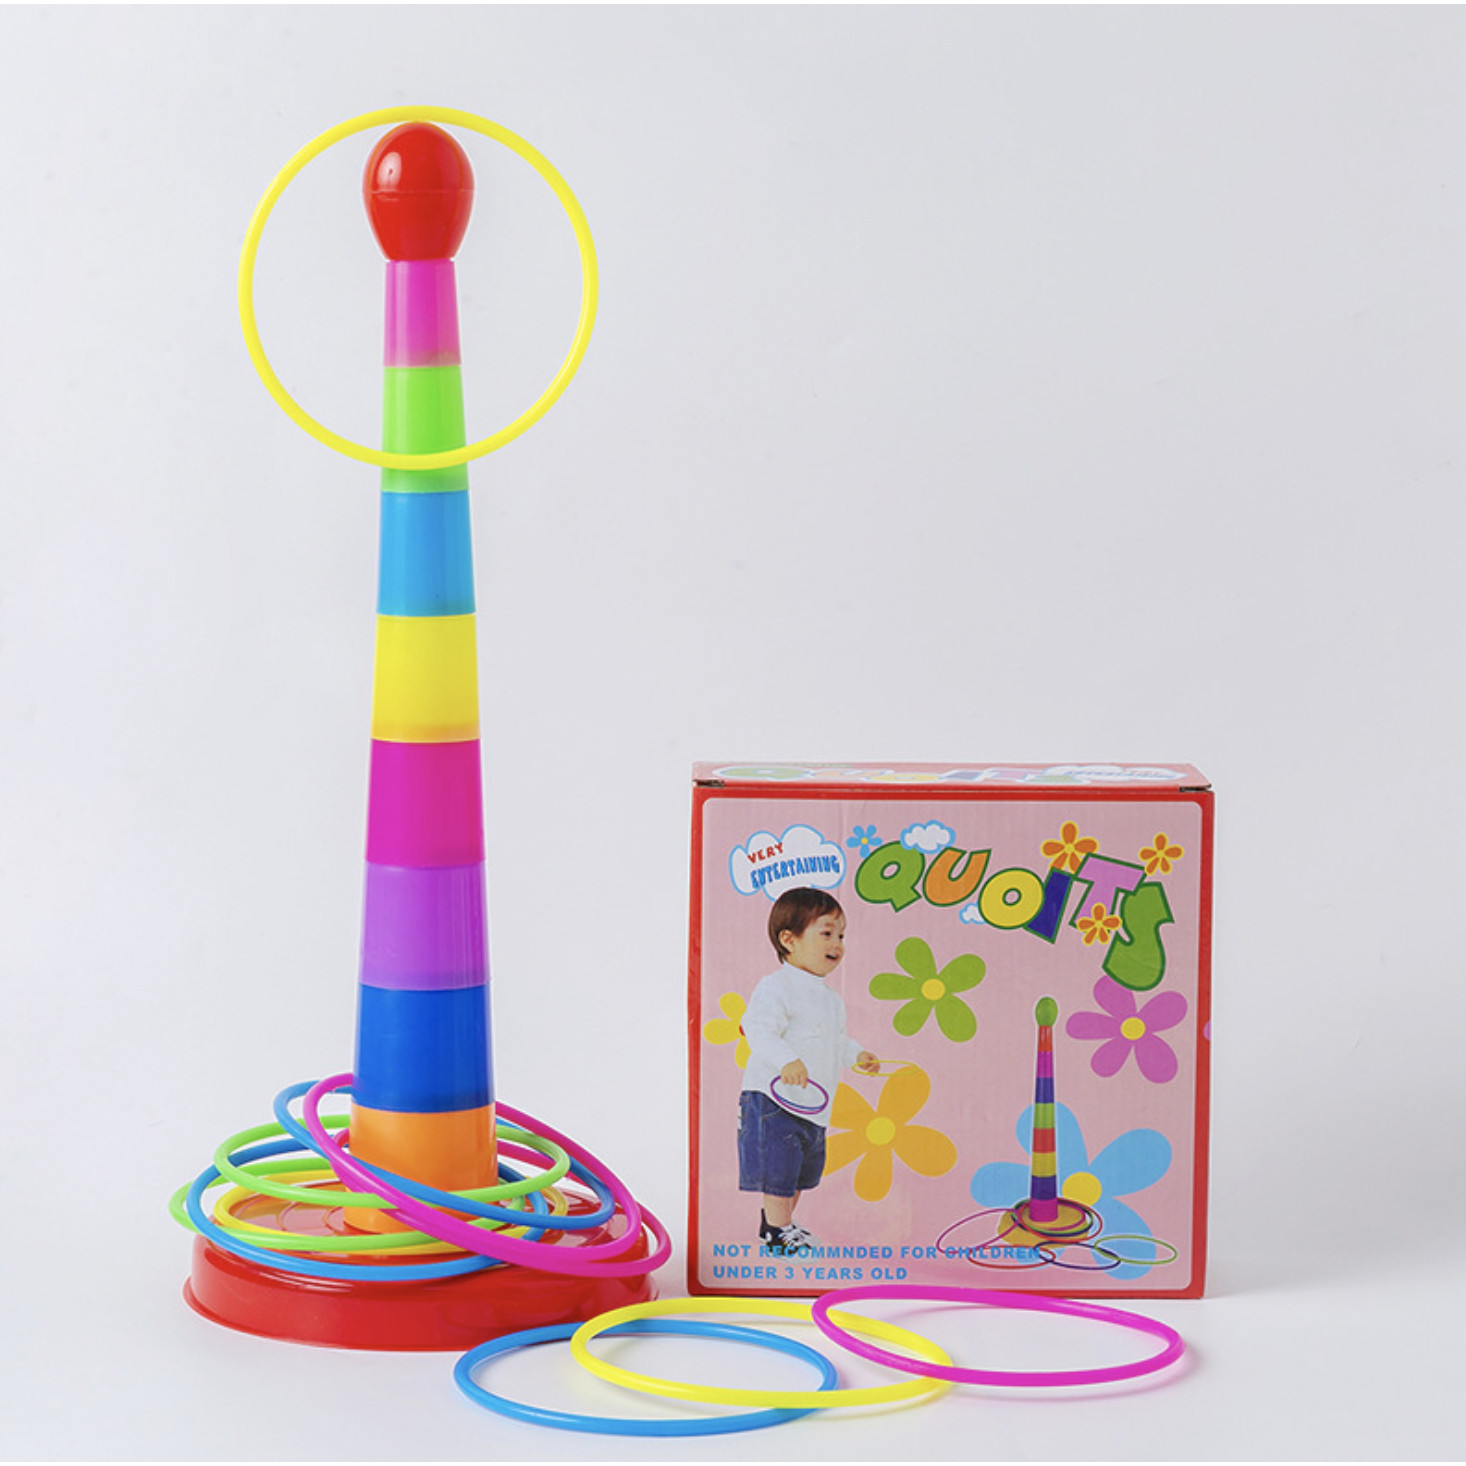 Bộ đồ chơi lắp ghép tháp ném vòng độc đáo - Đồ chơi vận động cho trẻ